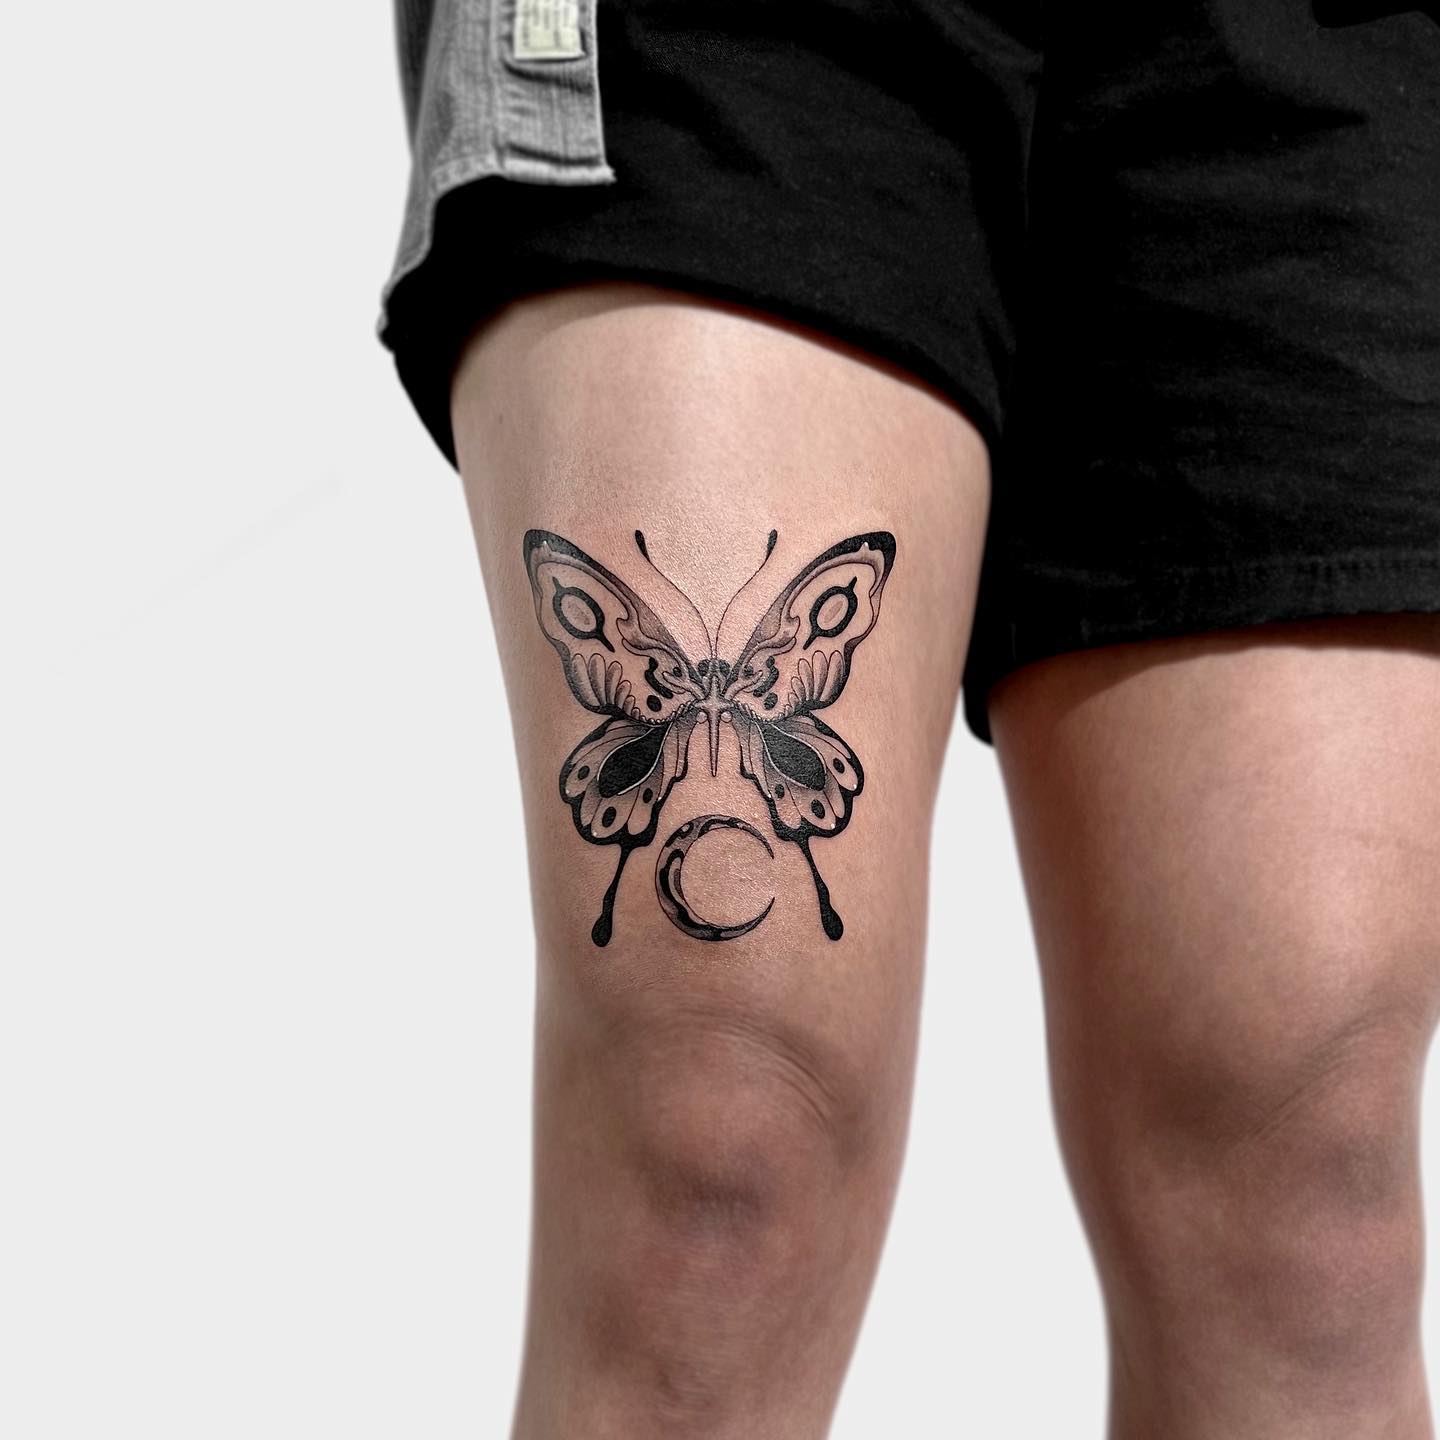 Tatuaje de mariposa negra en la pierna.